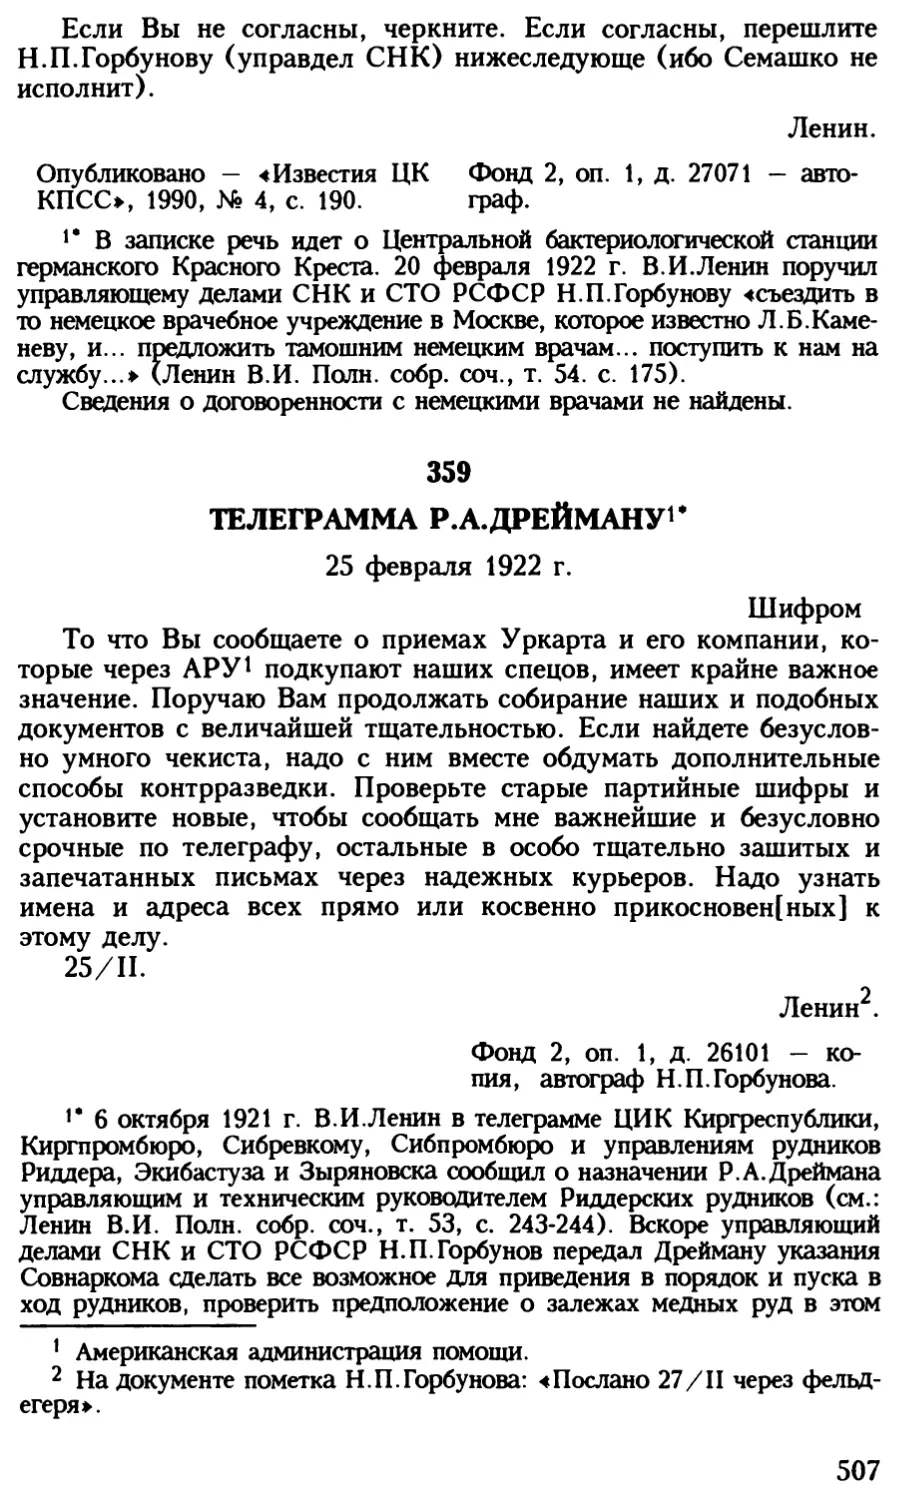 359. Телеграмма Р.А.Дрейману. 25 февраля 1922 г